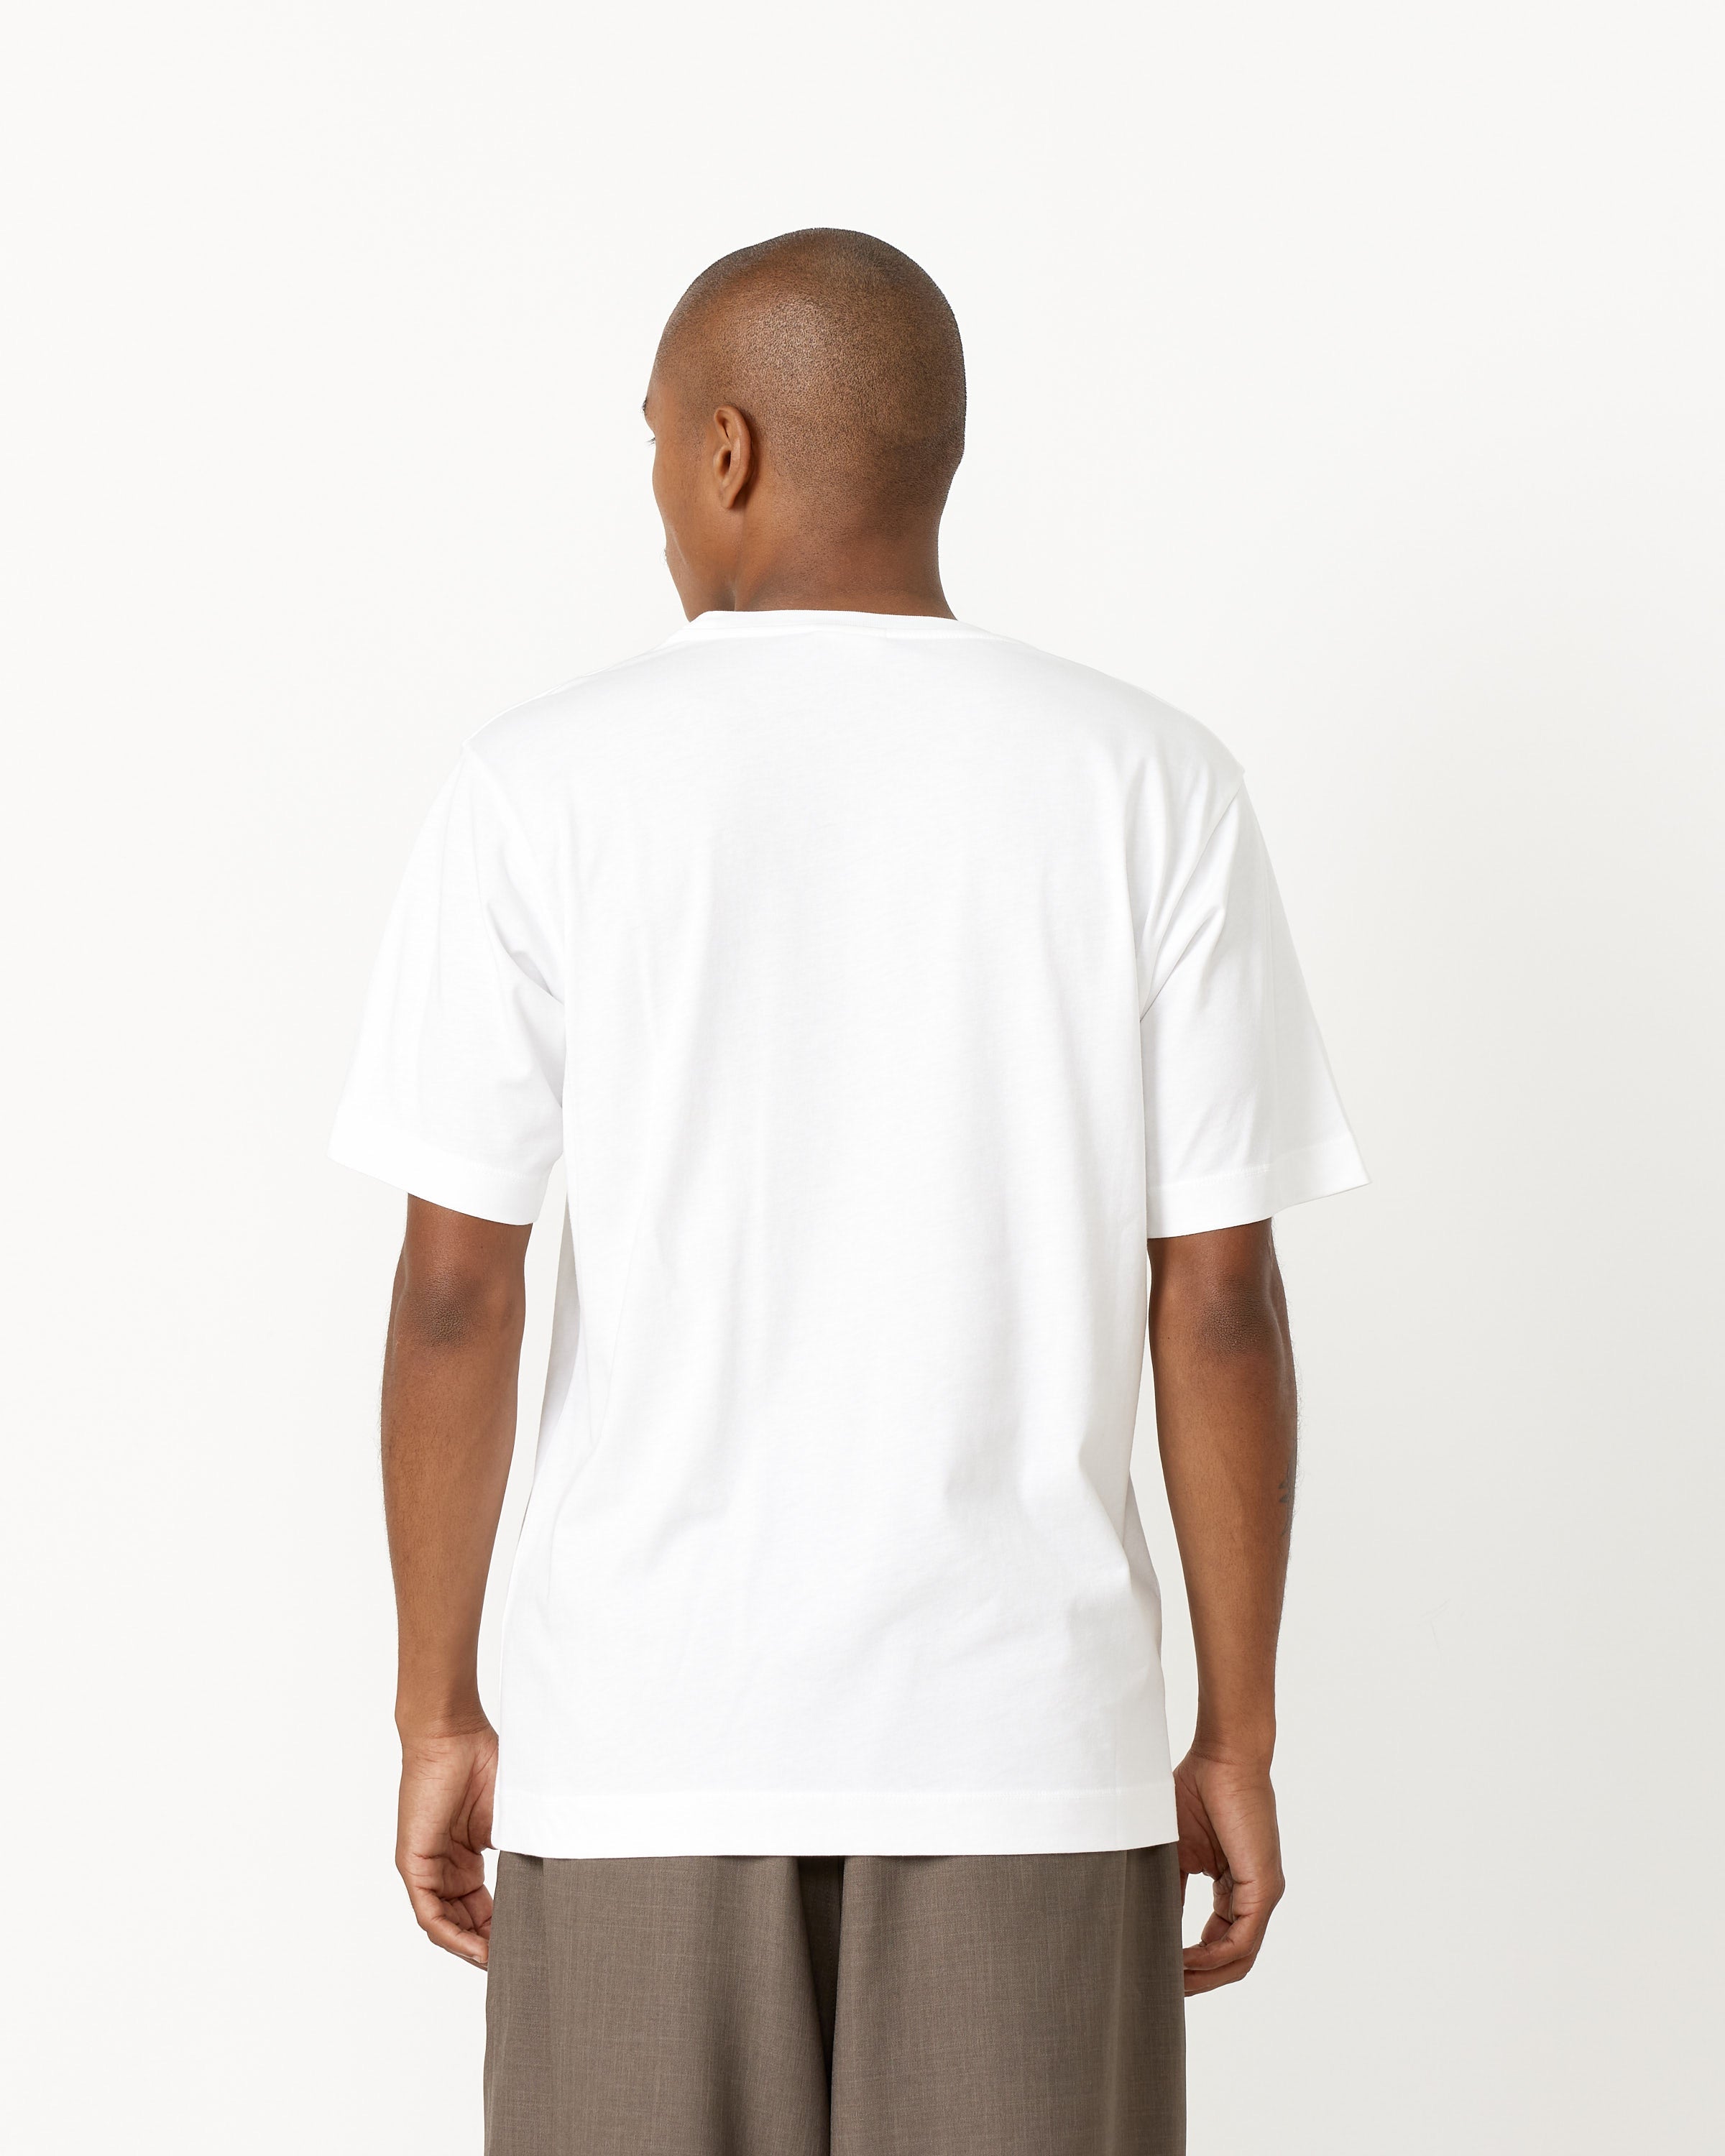 Hertz 7600 T-Shirt in White